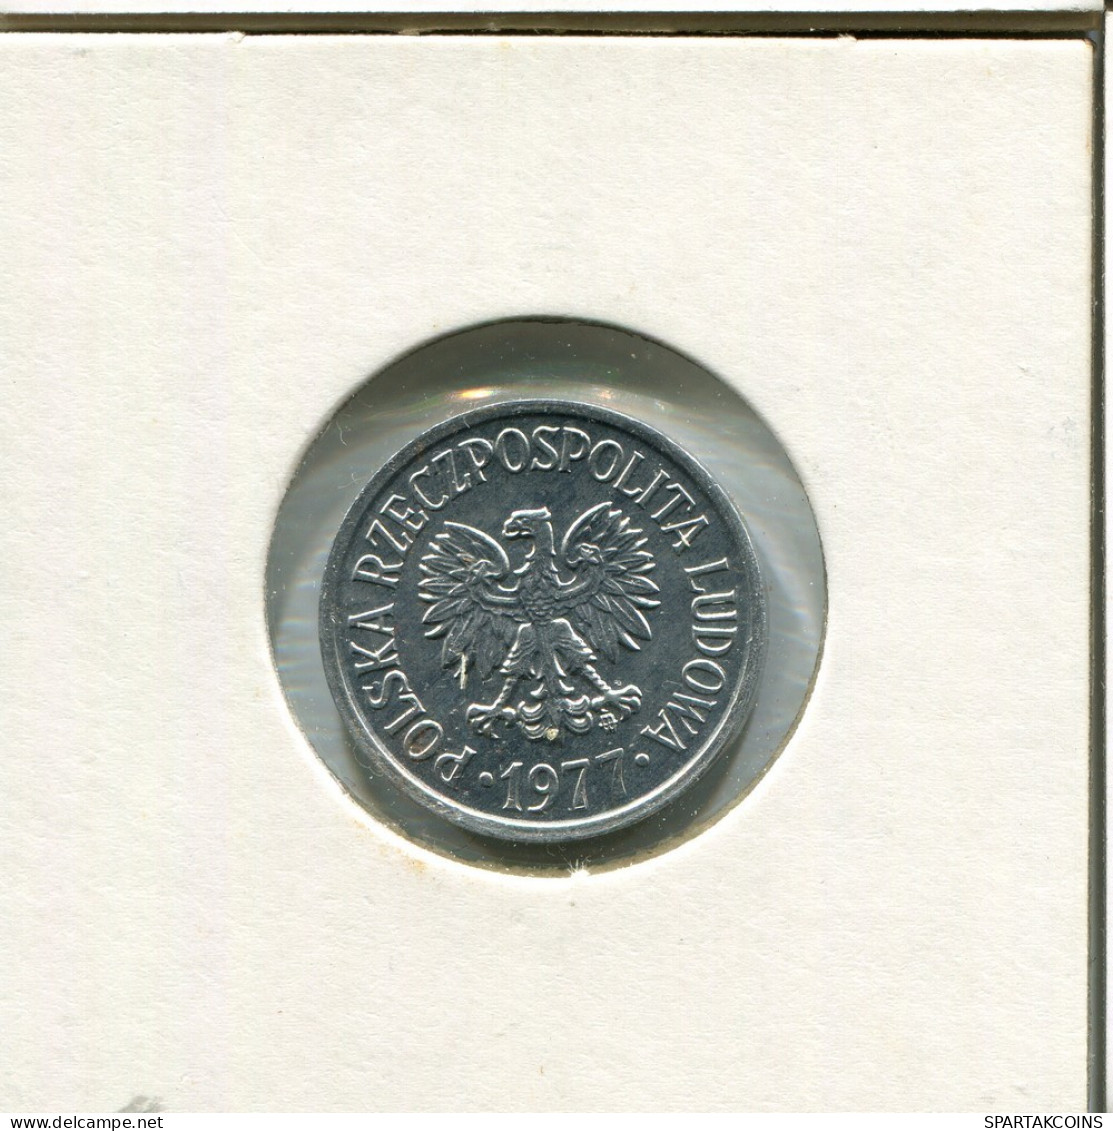 20 GROSZY 1977 POLAND Coin #AR776.U.A - Poland